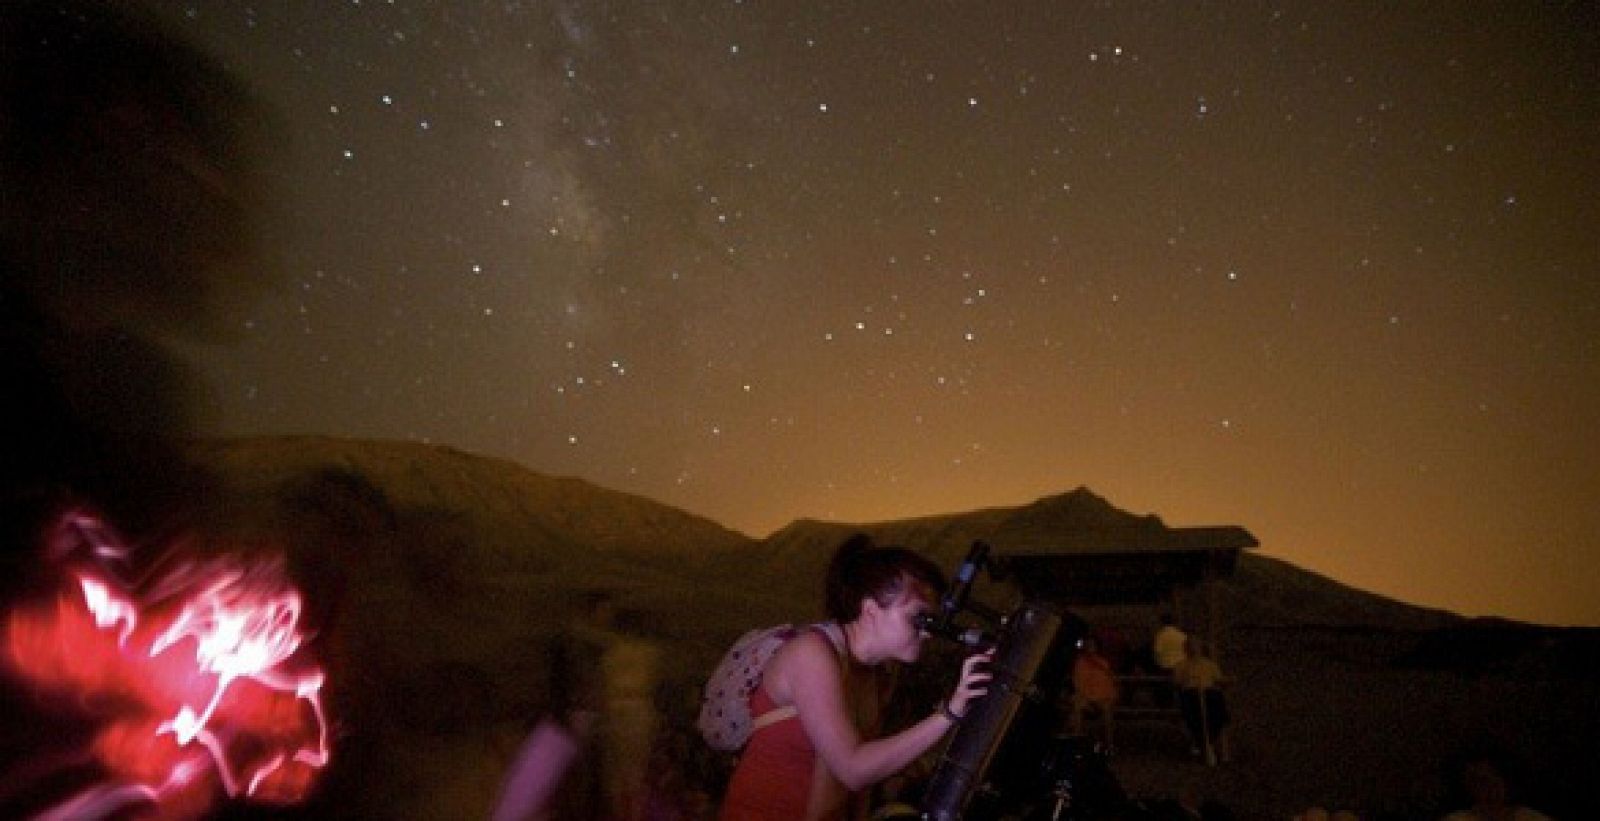 Un grupo de aficionados a la astronomia observa la lluvia de estrellas durante este fin de semana en Fuerteventura